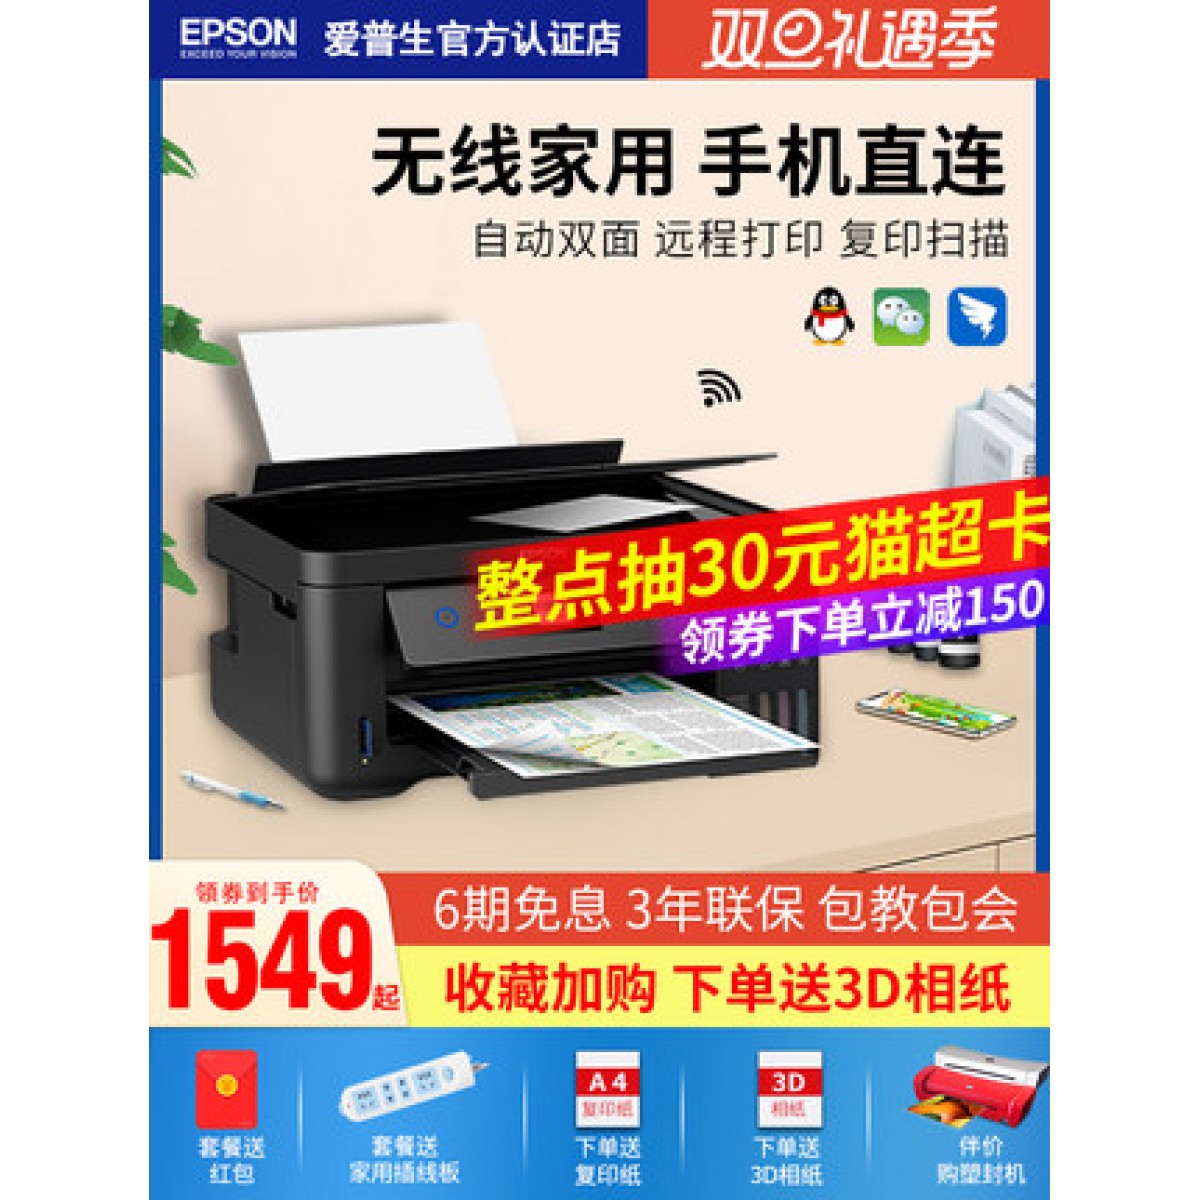 爱普生Epson L4168/4166彩色打印机复印一体机多功能a4连供喷墨照片扫描家用小型手机无线WIFI学生作业双面